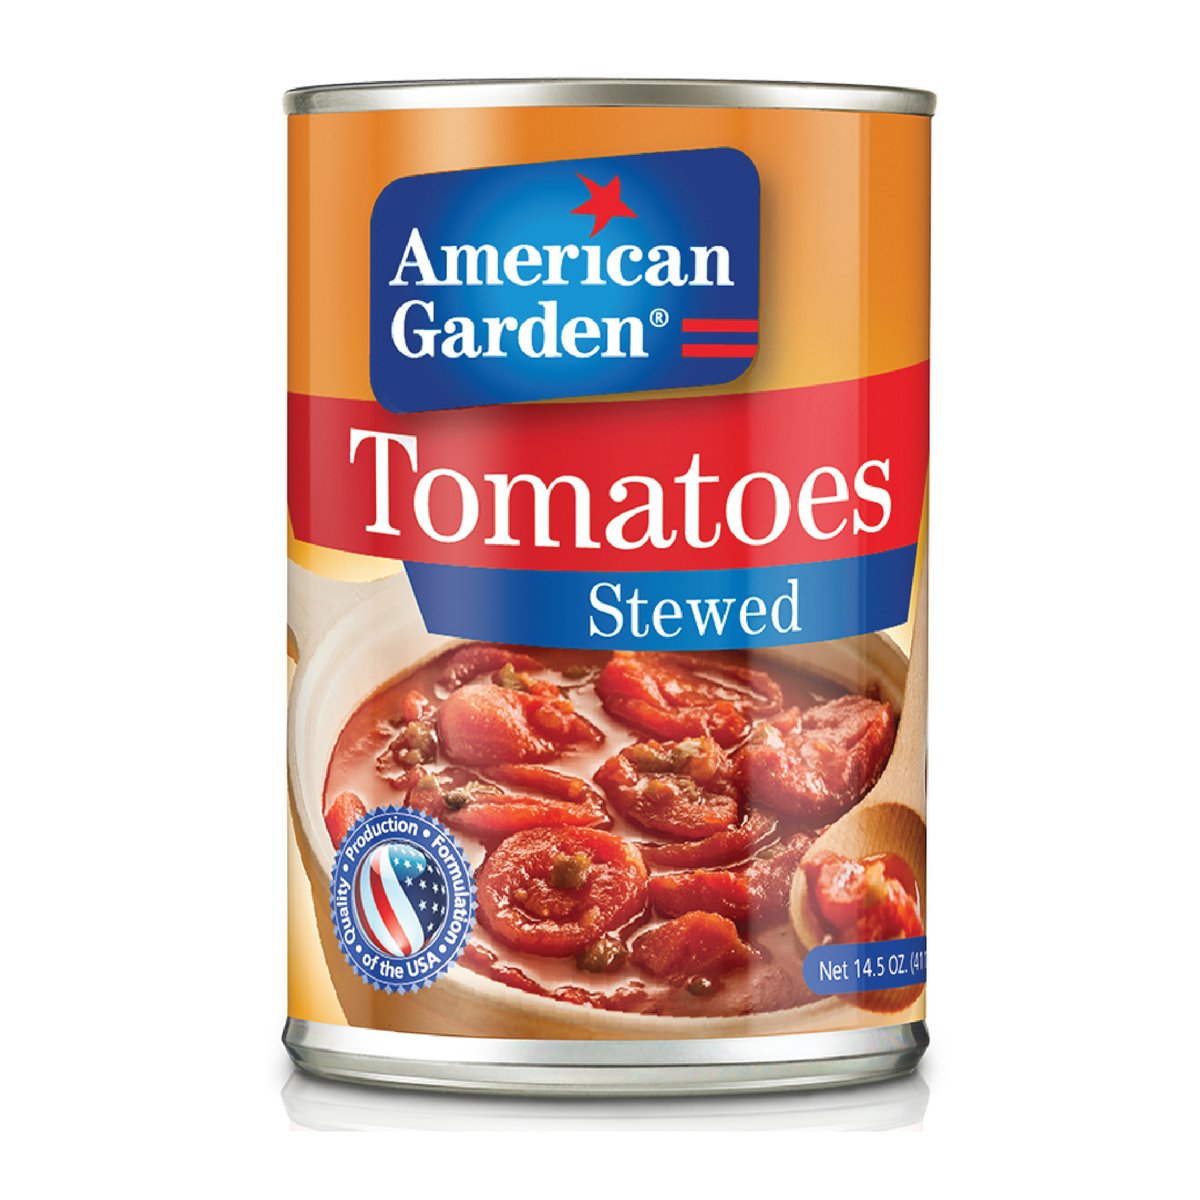 American Garden Stewed Tomatoes, Gluten Free, 411 g